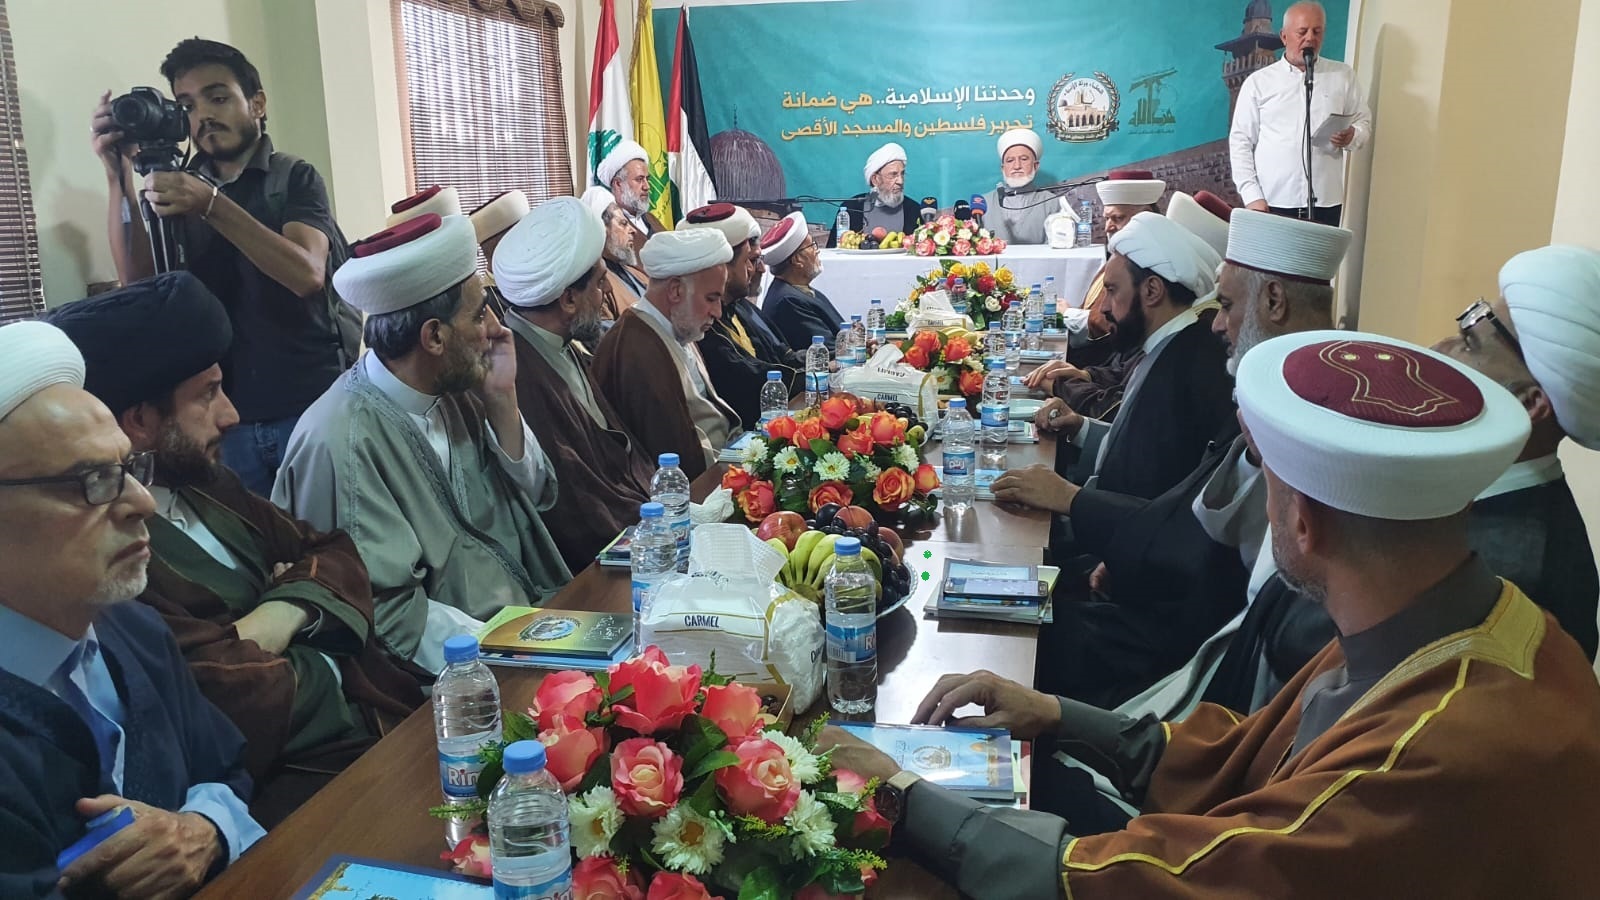 مجلس علماء فلسطين يقيم اللقاء العلمائي الوحدوي بمناسبة أسبوع الوحدة في صيدا  